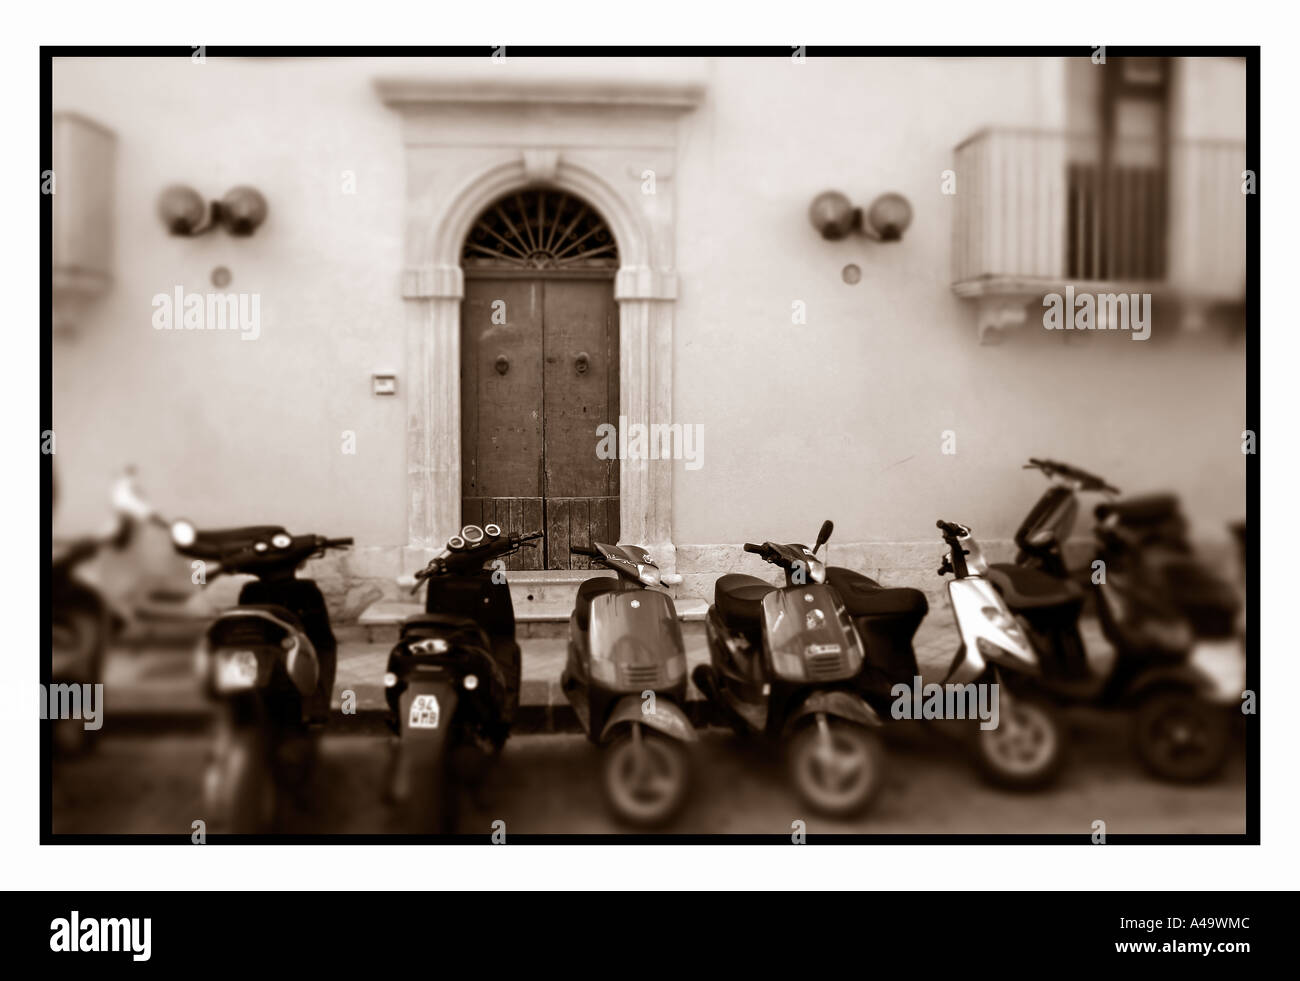 Motorroller geparkt vor einem Haus in Noto Süditalien Sizilien. Stockfoto